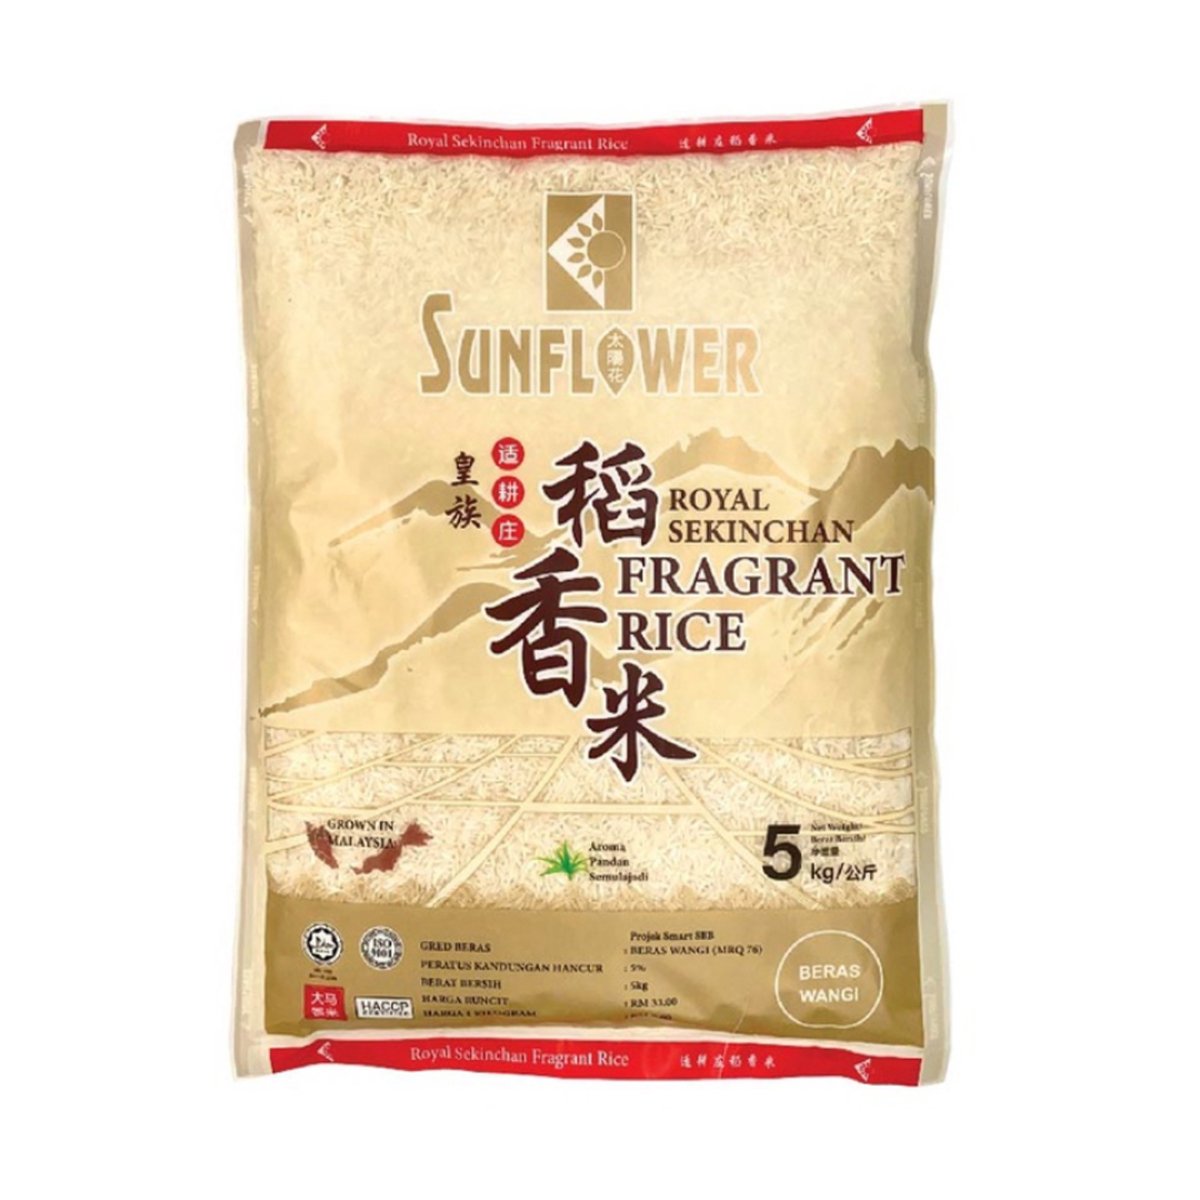 Sunflower Royal Sekinchan Fragrant Rice 5kg